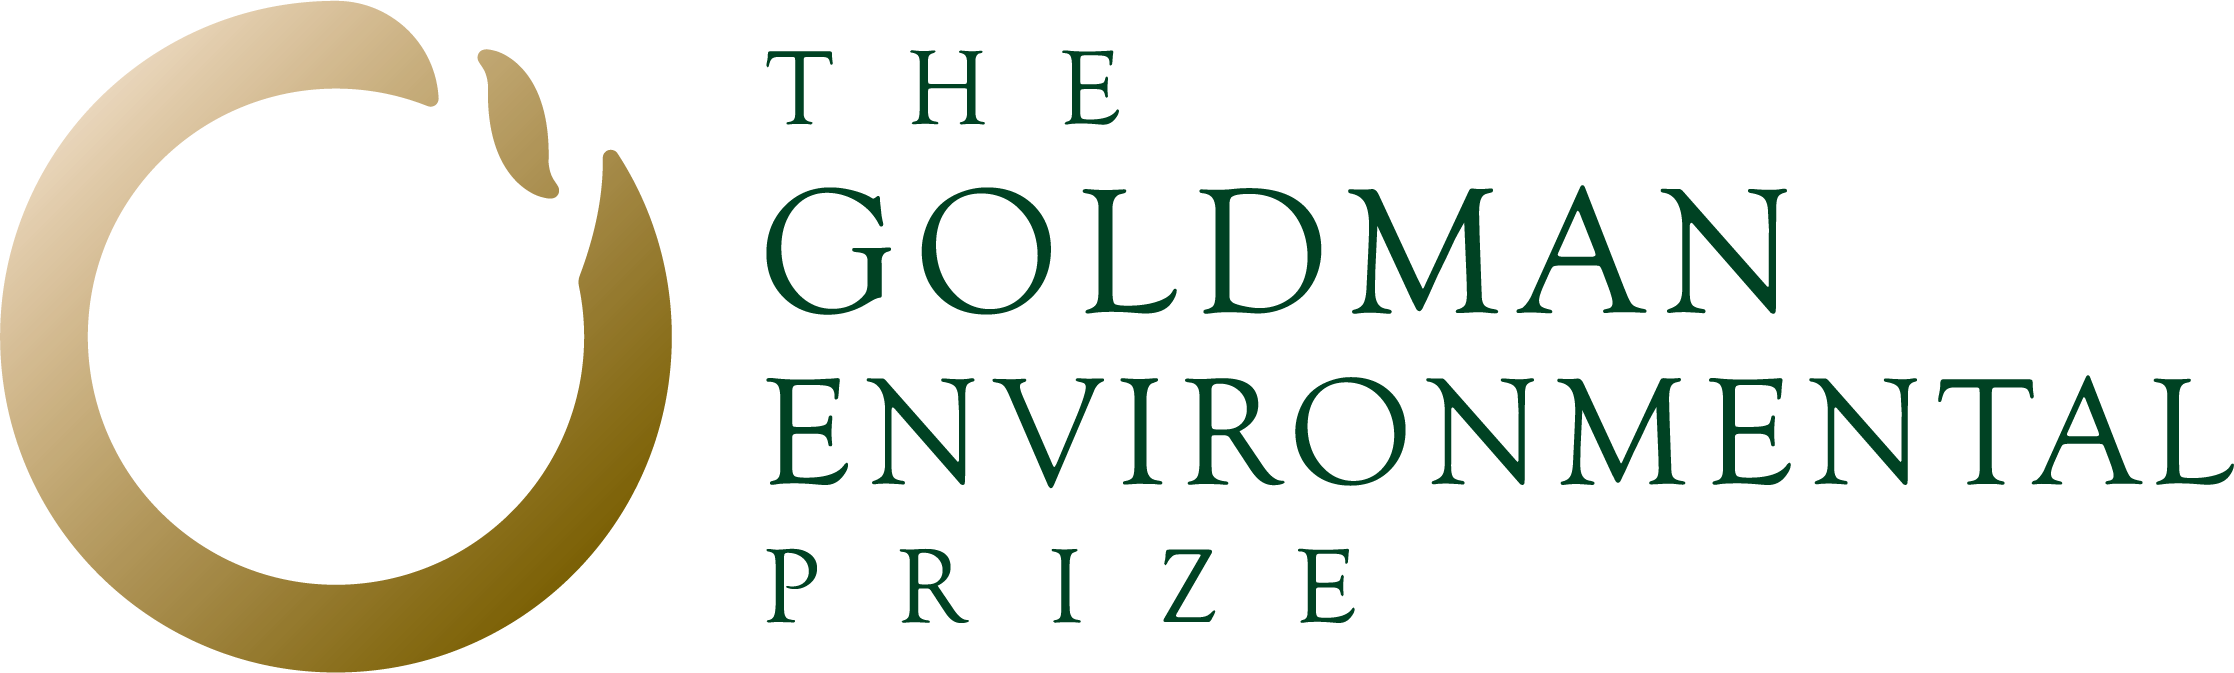 The Goldman Environmental Prize logo